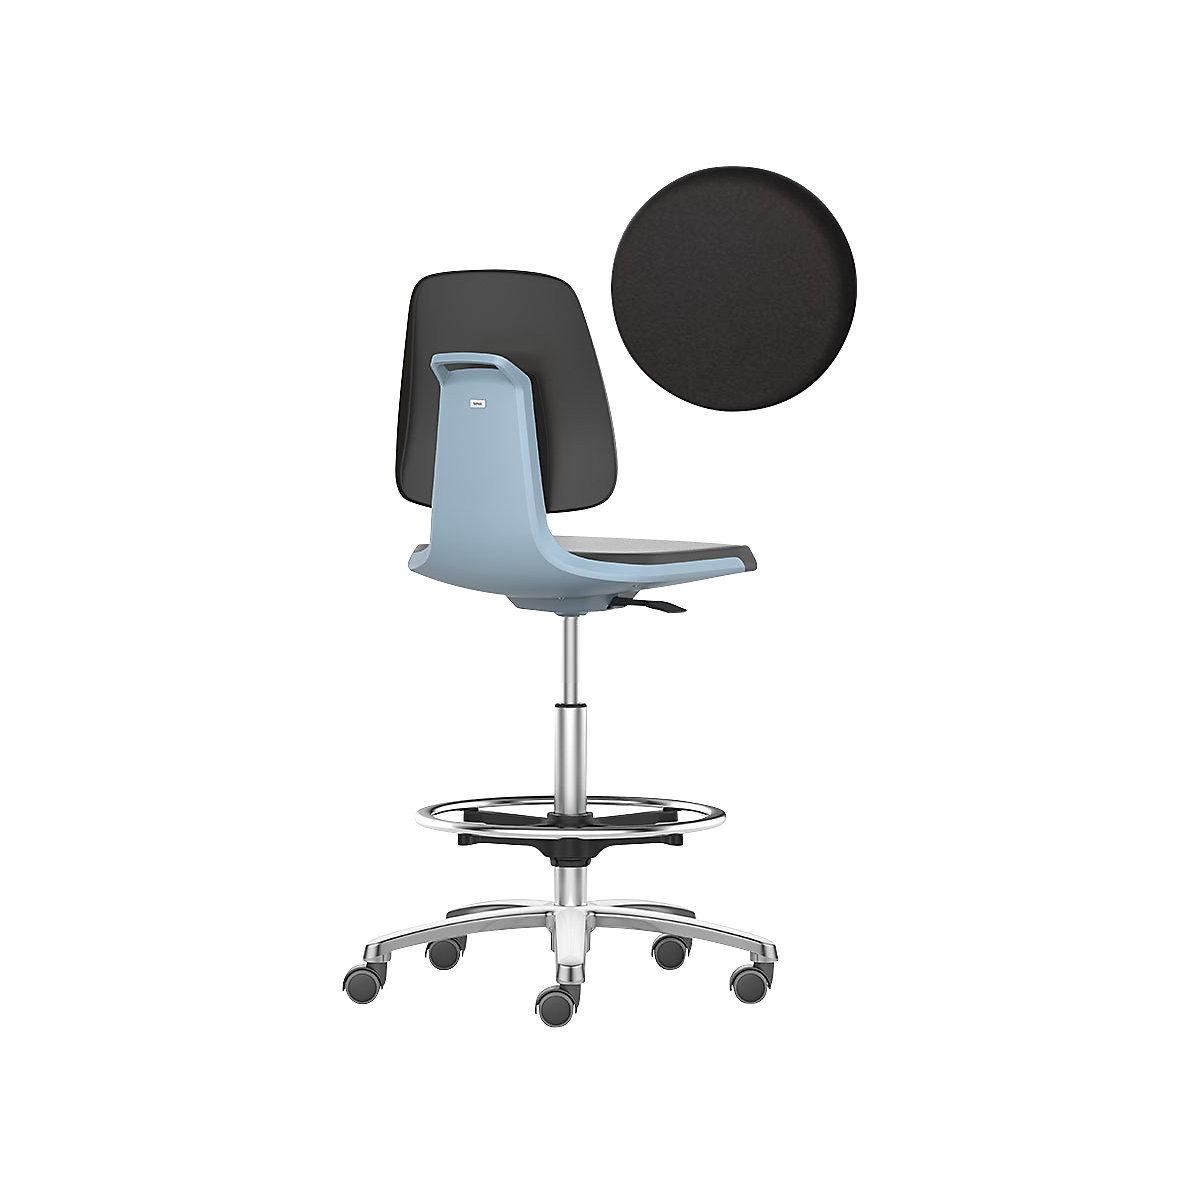 bimos – Siège d'atelier LABSIT, siège haut avec roulettes blocables et repose-pieds circulaire, assise à habillage similicuir, bleu